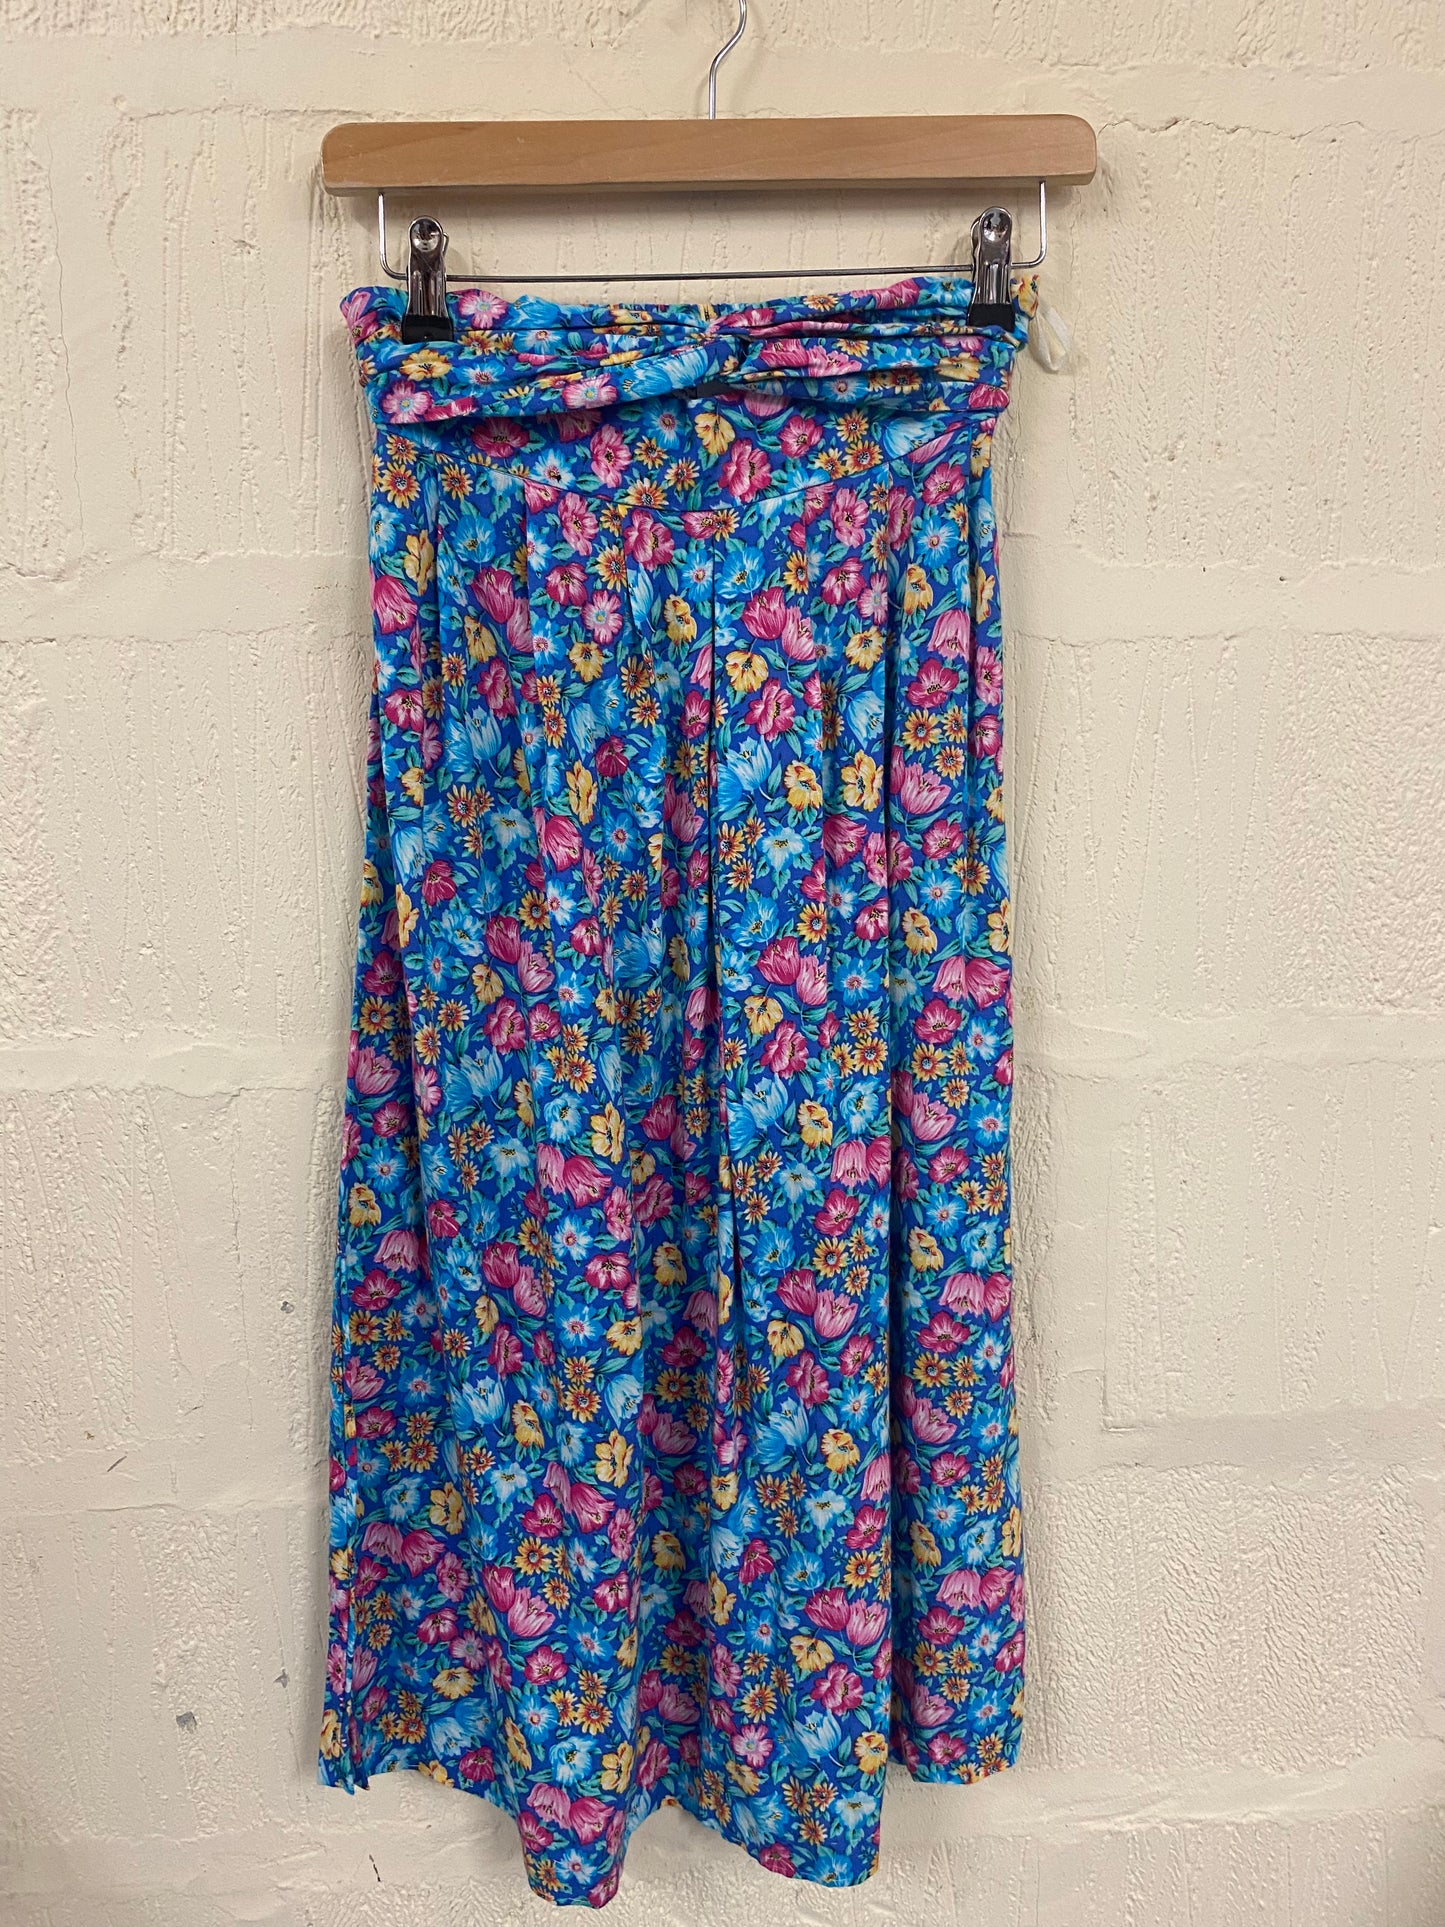 Vintage Flowy Blue Floral Skirt Size 8